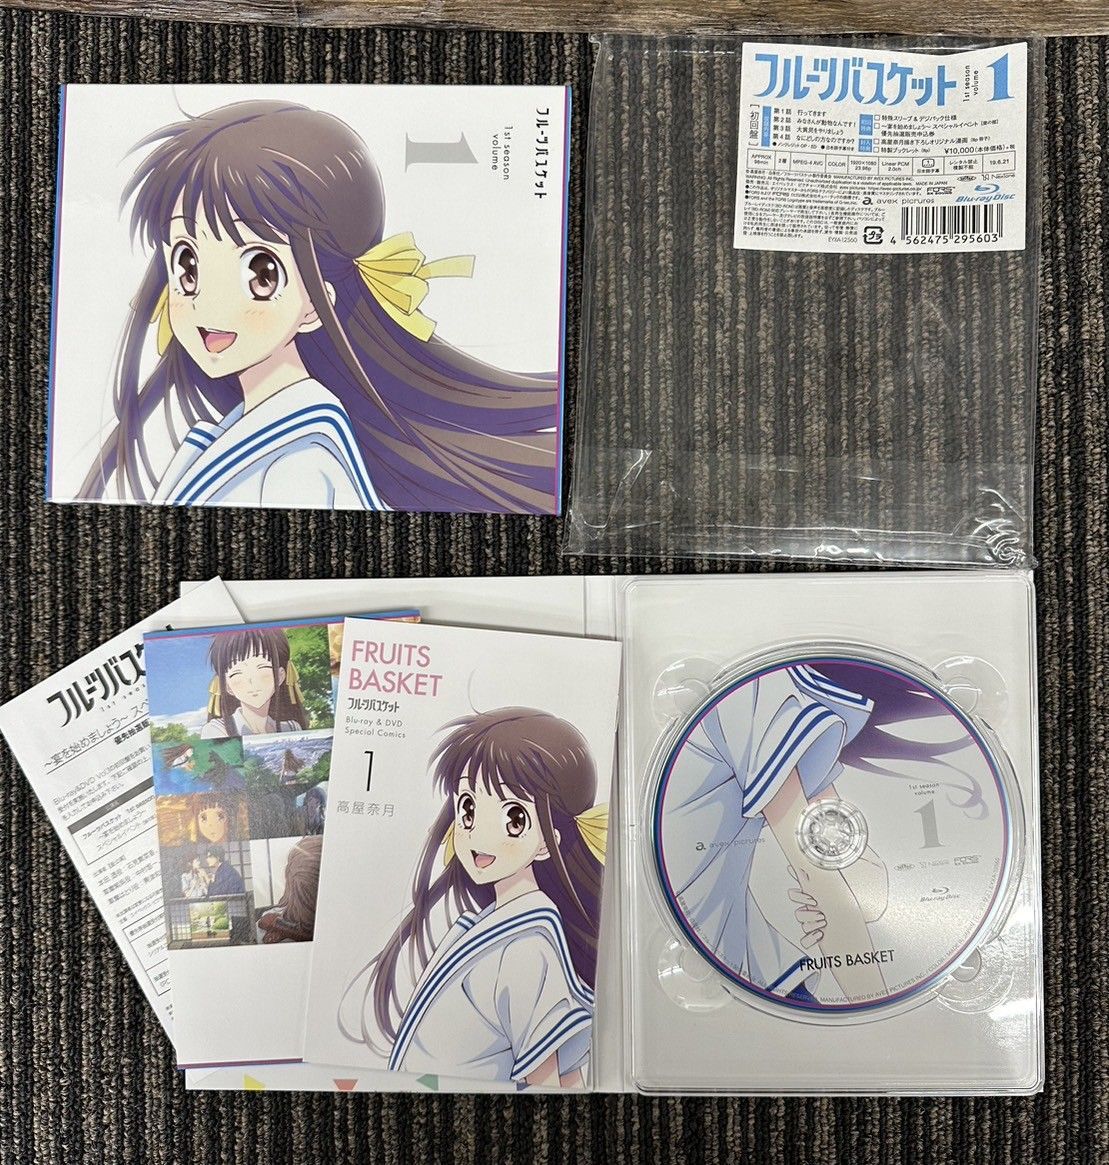 フルーツバスケット Blu-ray Disc BOX 1st season volume 6巻セット (2312261) - メルカリ